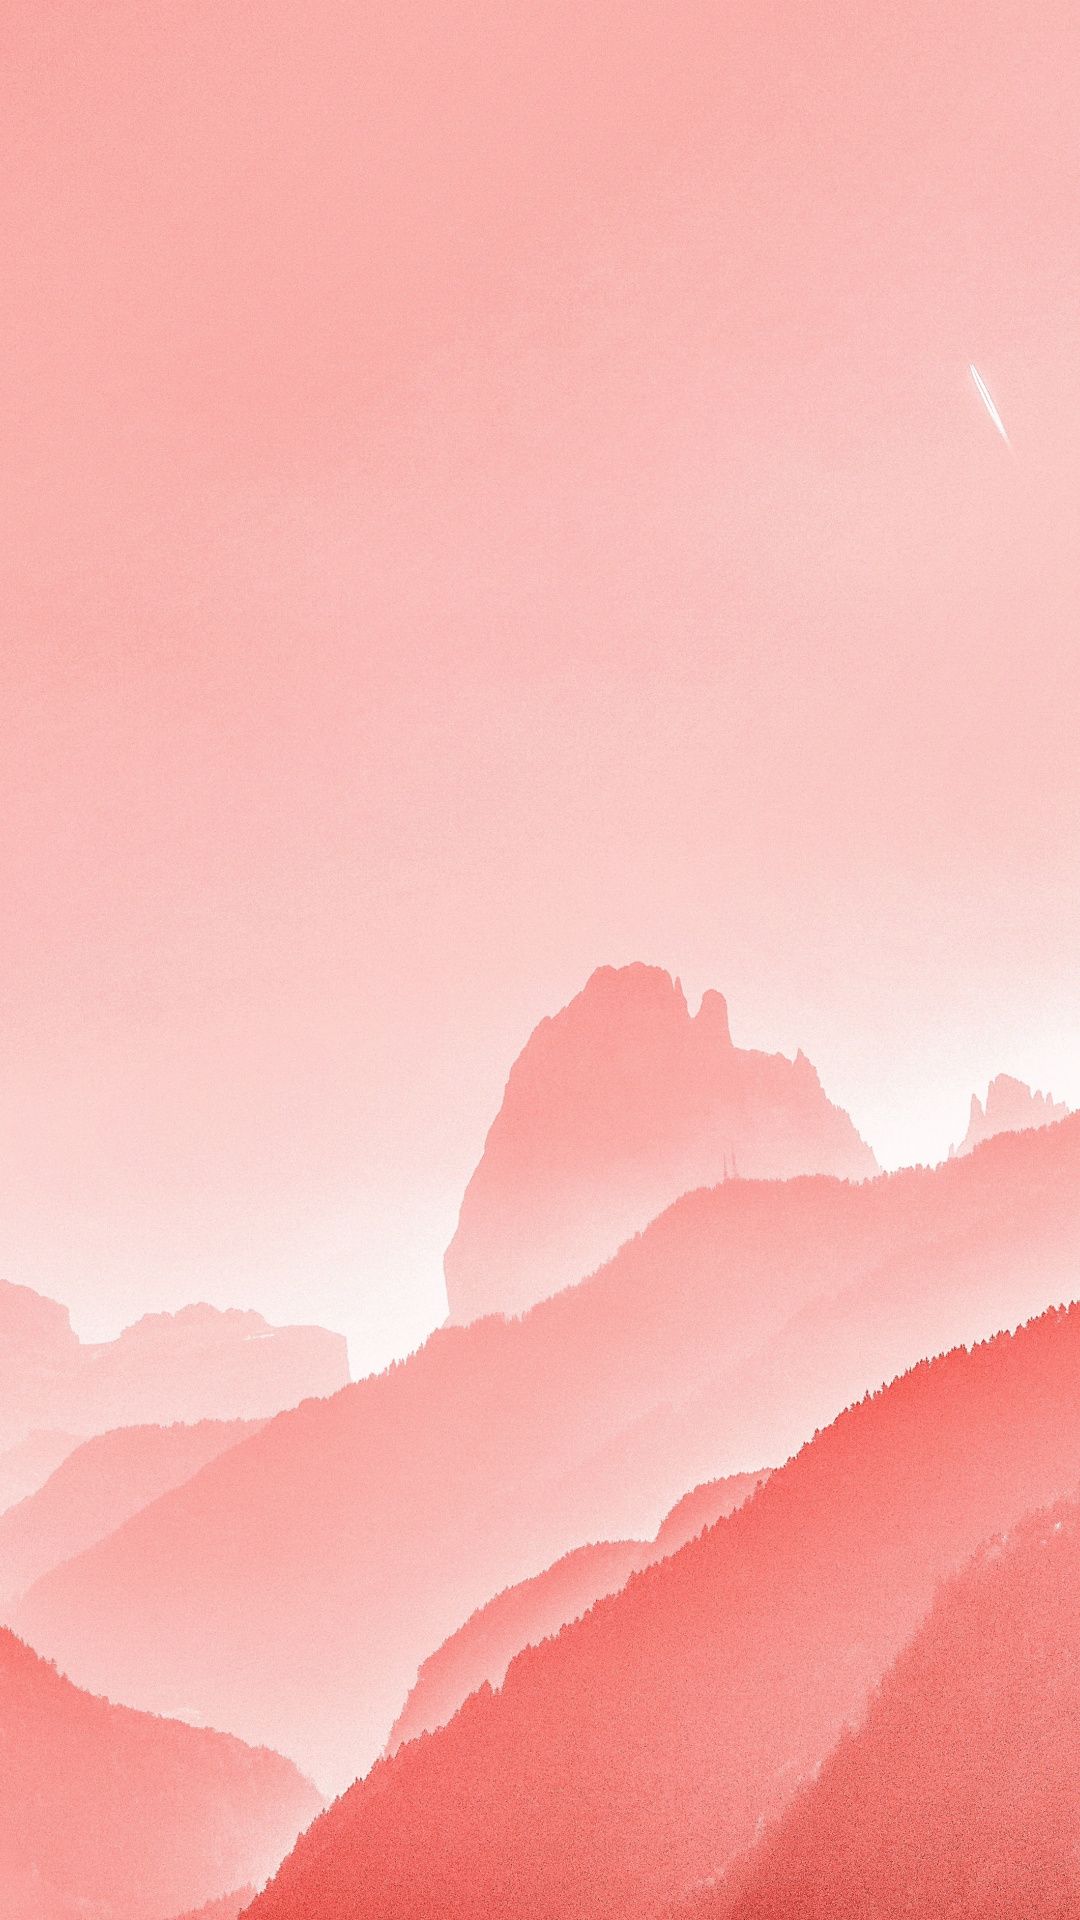 Horizon, sunset, mountains, minimal, 1080x1920 wallpaper. Coral wallpaper, Pastel aesthetic, Pink painting